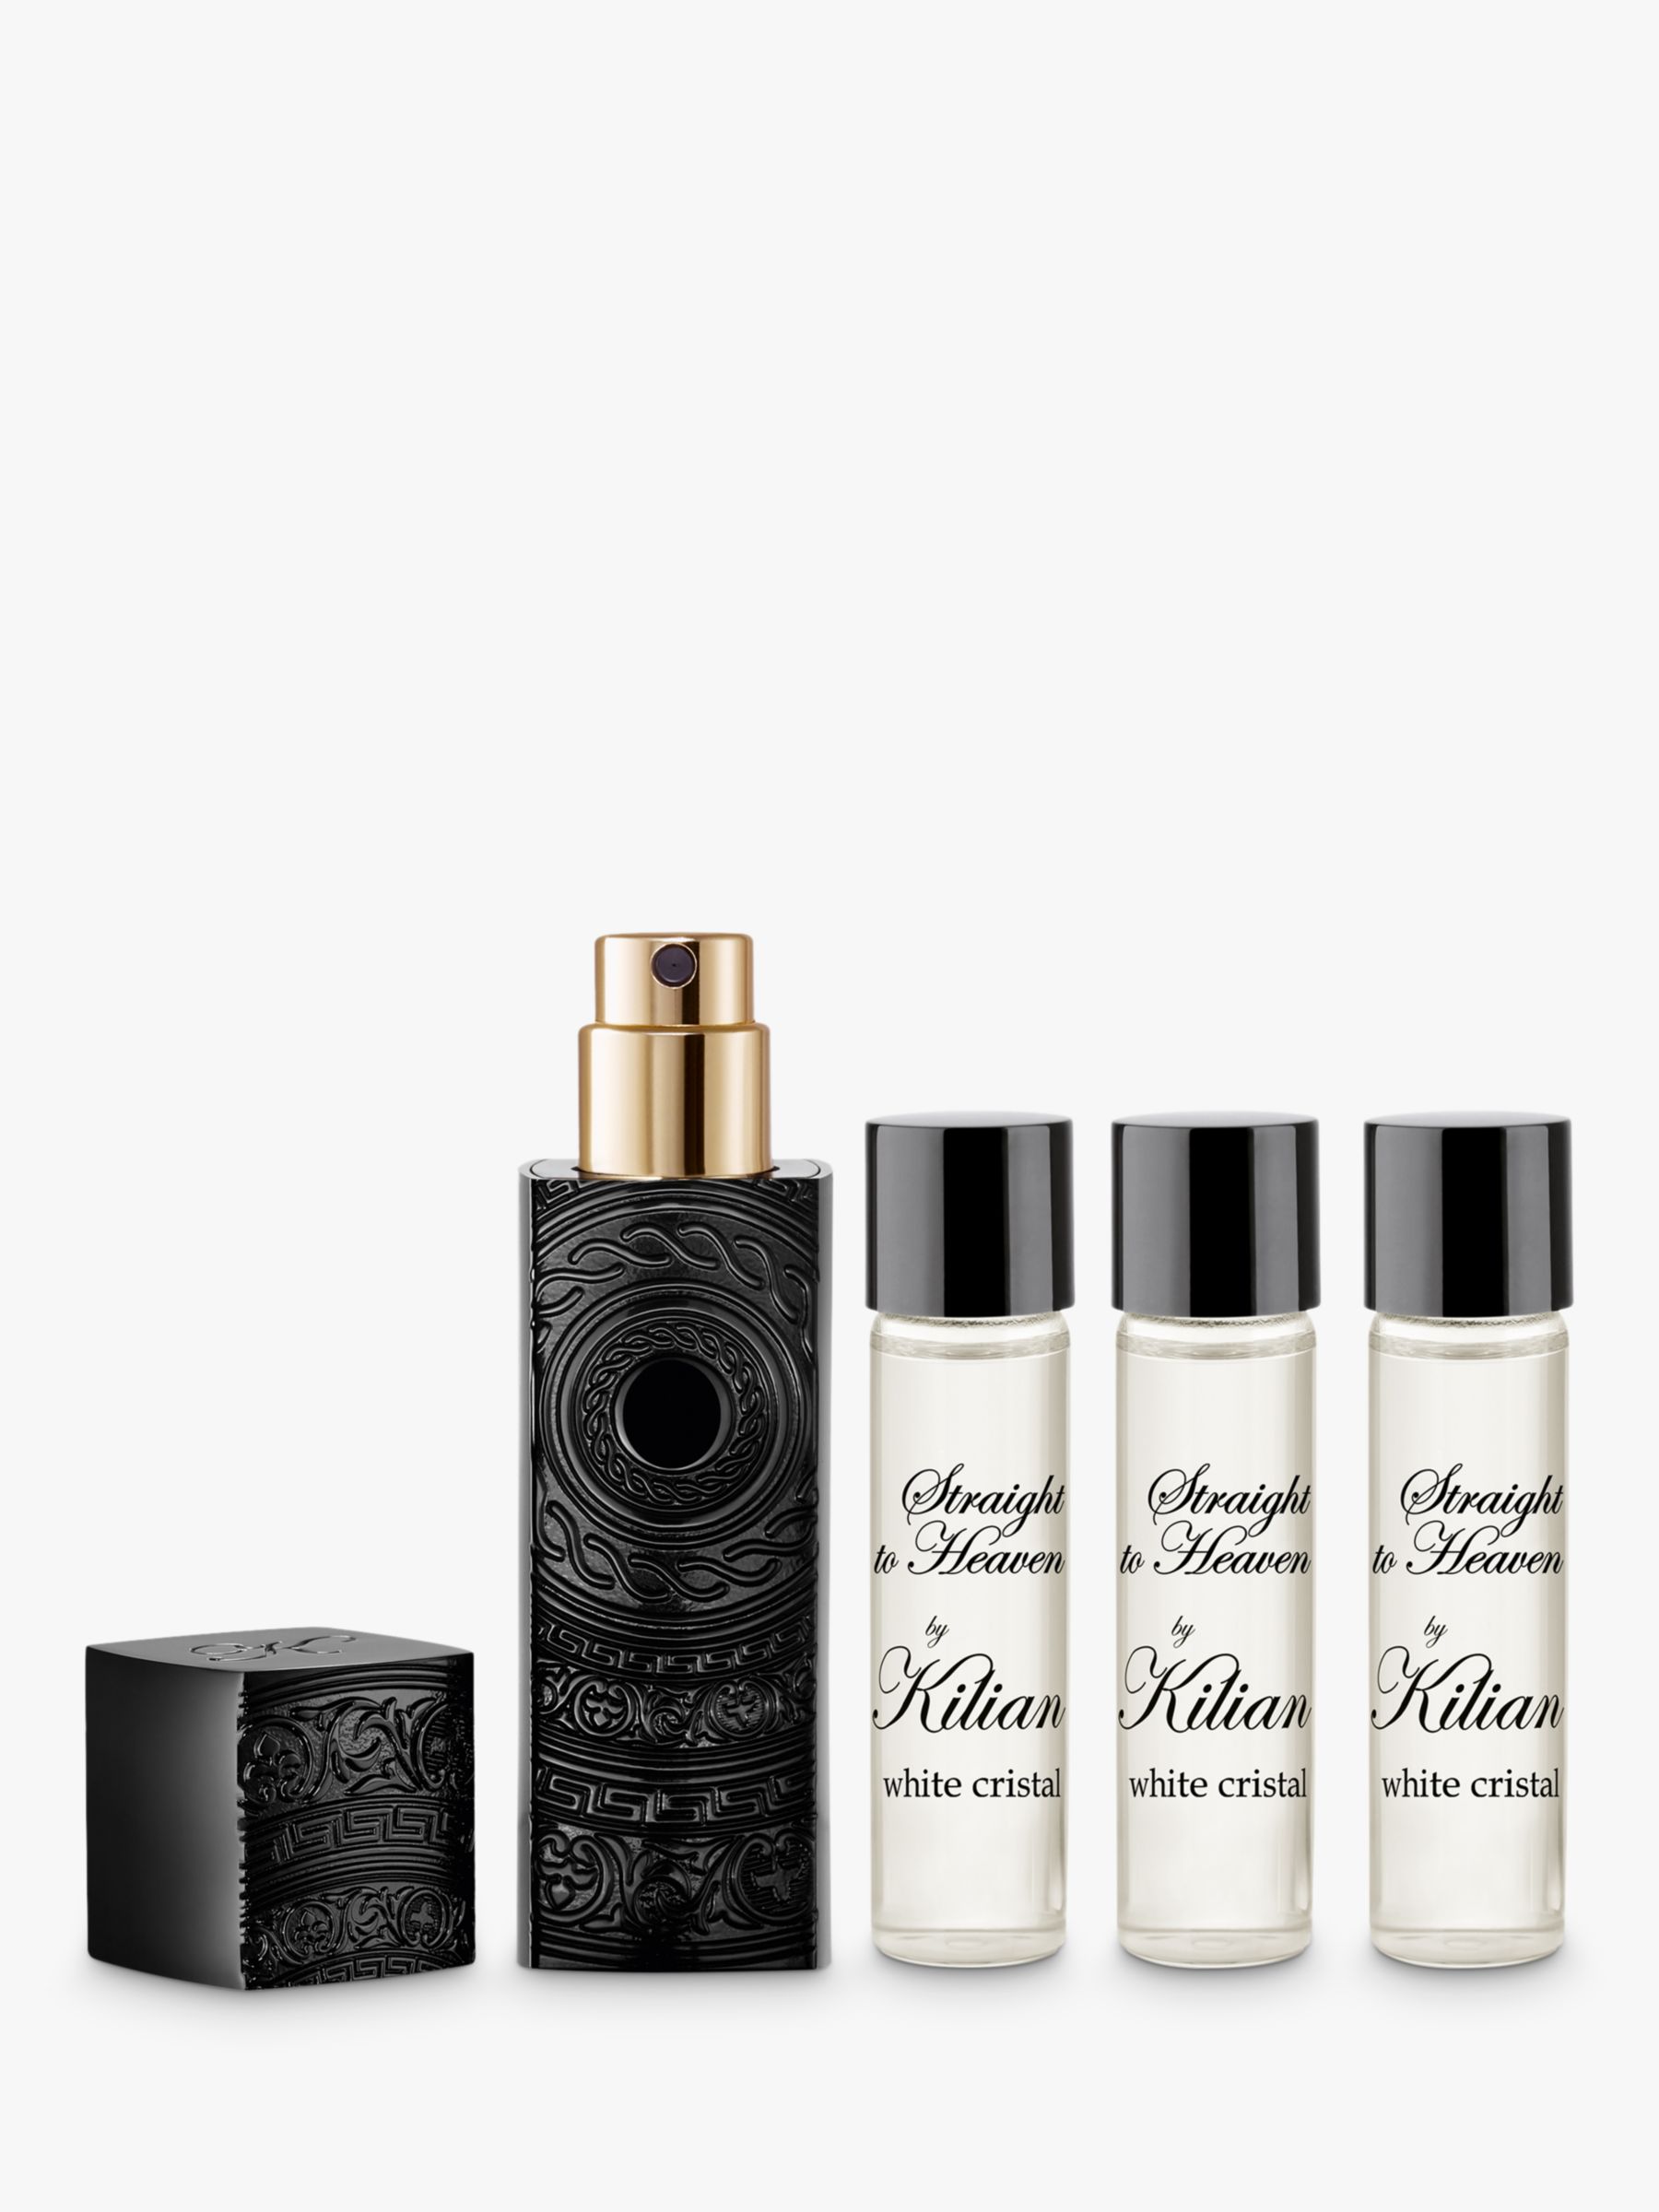 KILIAN PARIS Straight To Heaven Eau de Parfum Travel Fragrance Gift Set